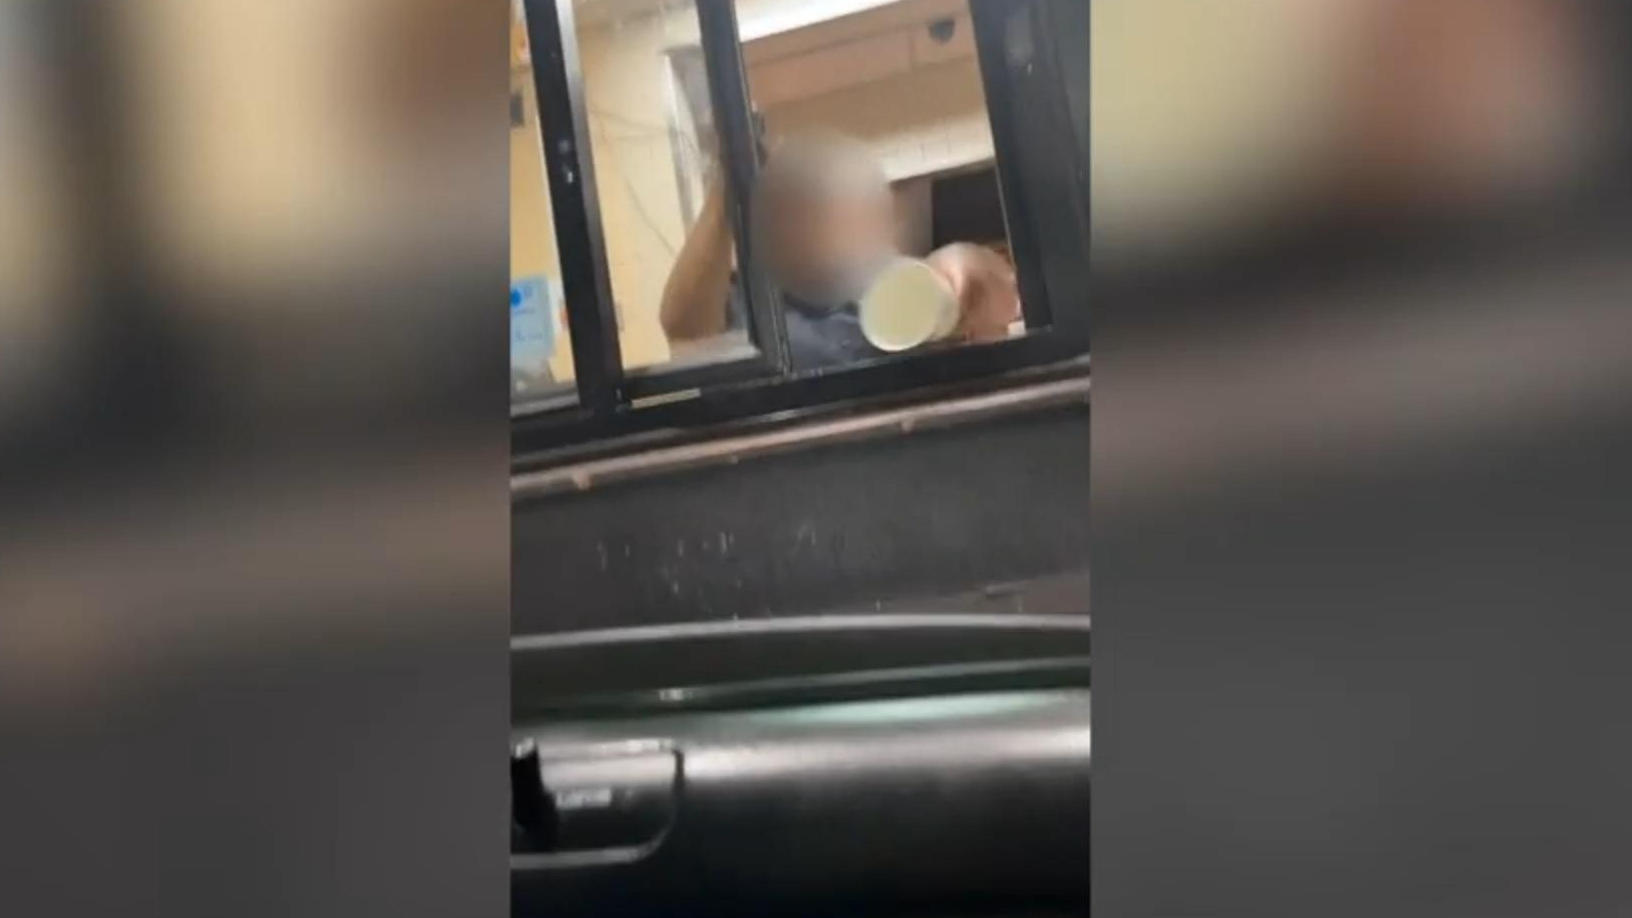 McDonalds-Mitarbeitern schüttet Frau Wasser ins Gesicht Streit eskalierte wohl